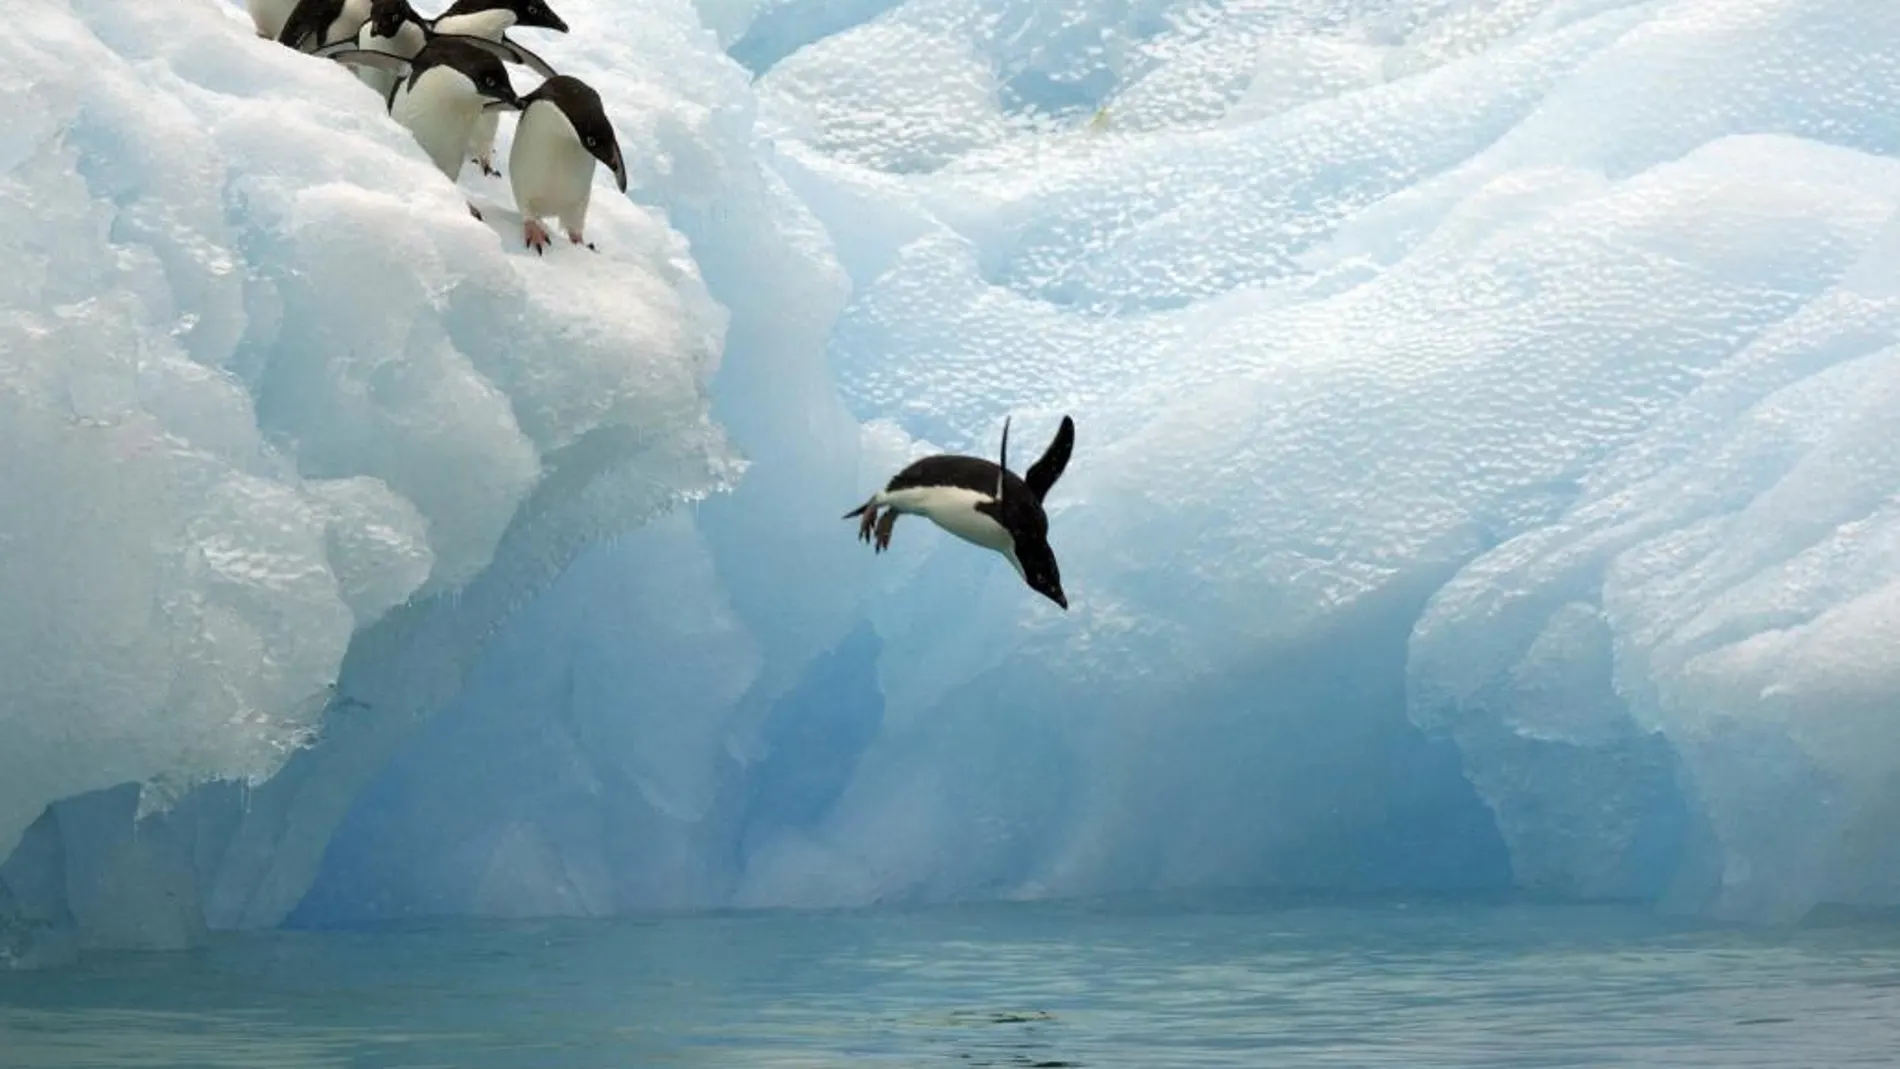 Imagen facilitada este viernes por WWF de pinguinos en la Antartida. La organización ecologista WWF pide crear una gran reserva marina protegida en la Antártida, al considerar que ayudará a mitigar los efectos del cambio climático y conservar la vida en ese continente